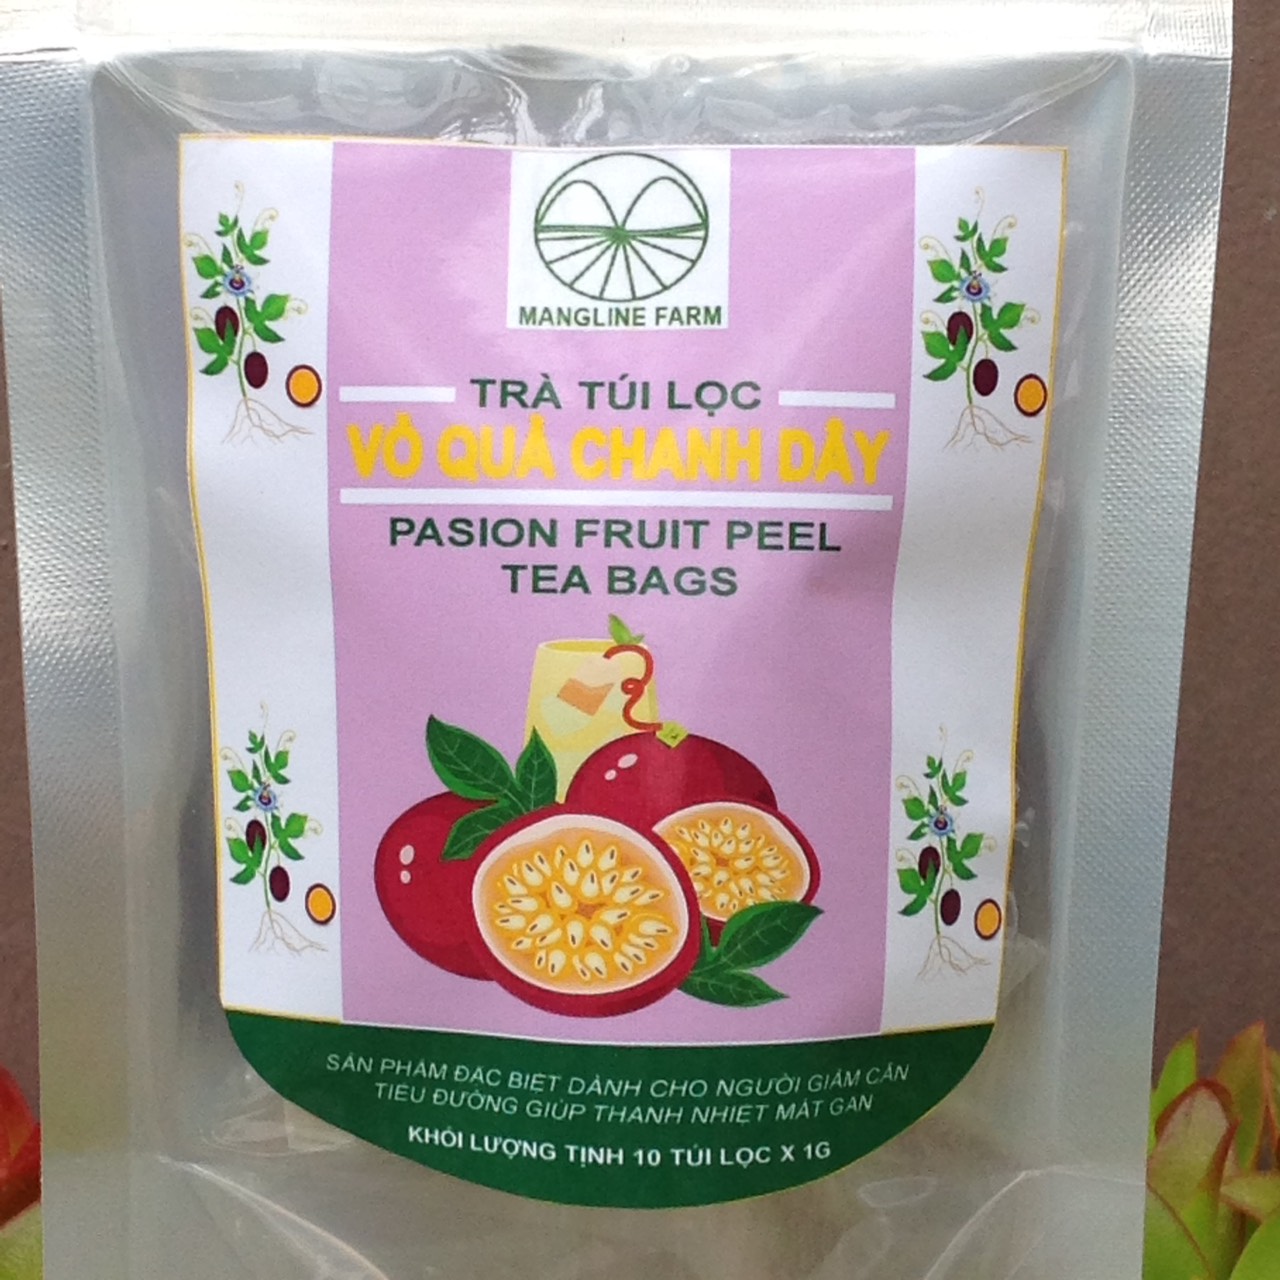 Sản phẩm mới độc lạ trà vỏ chanh dây túi lọc mangline farm đà lạt 10 túi - ảnh sản phẩm 3